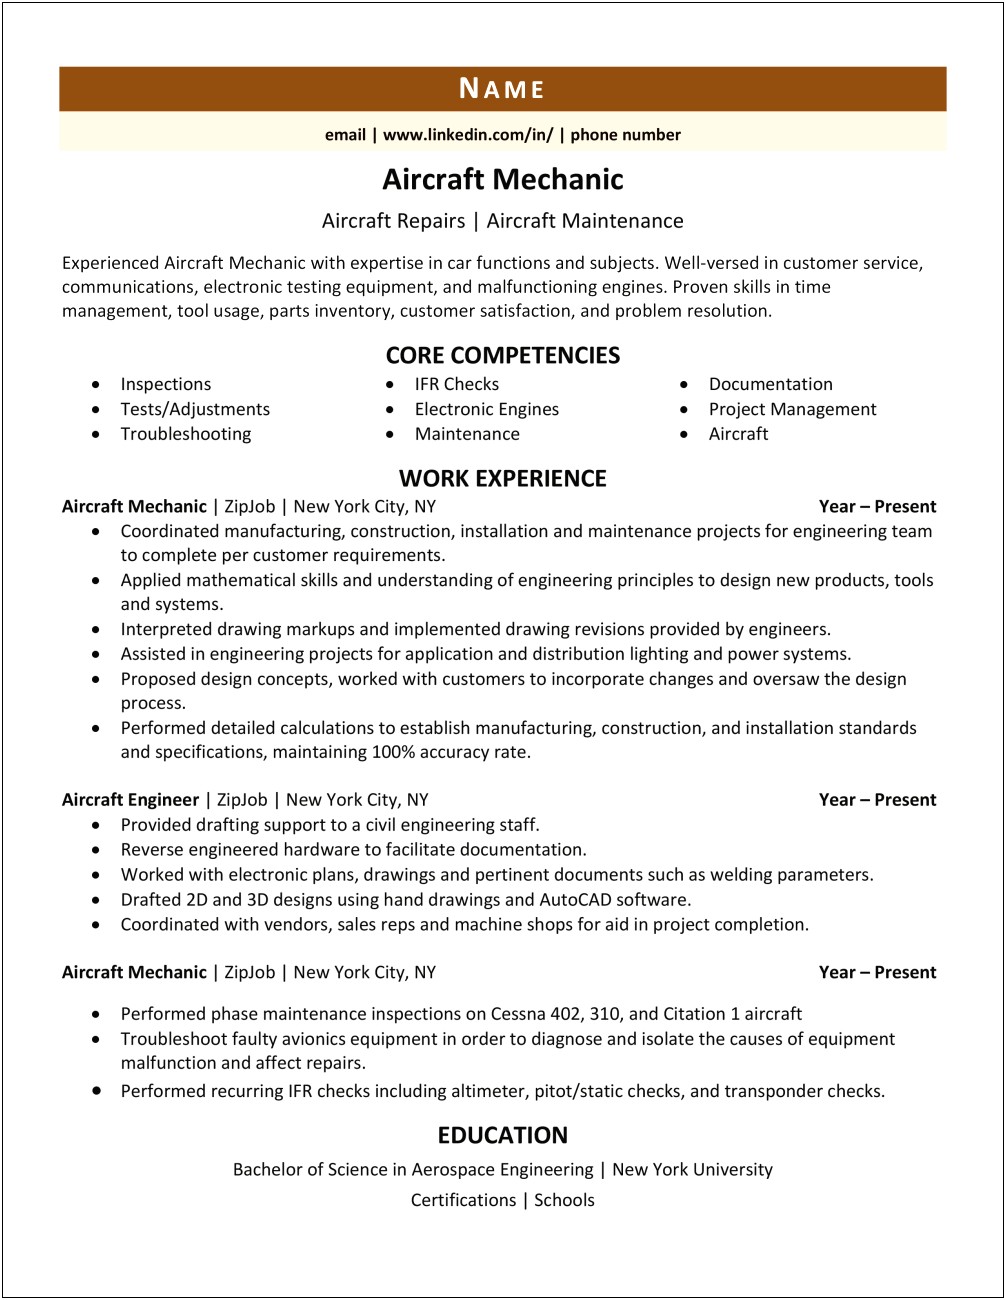 Sample Ground Support Equipment Airport Mechanic Resume